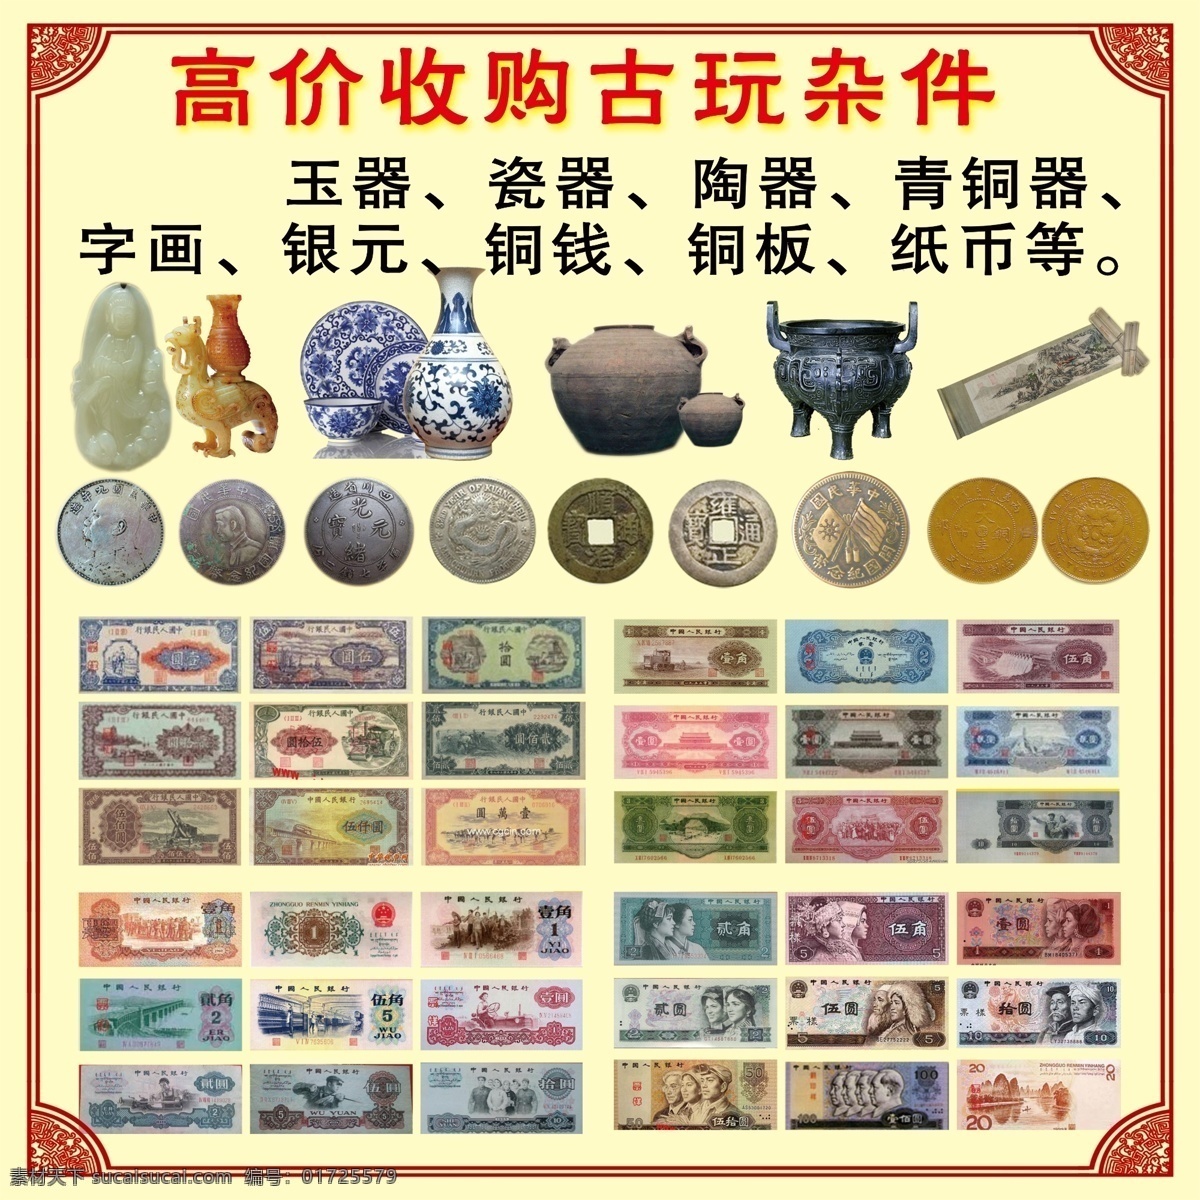 古玩收藏 古玩 人民币 第一套人民币 古董 银元